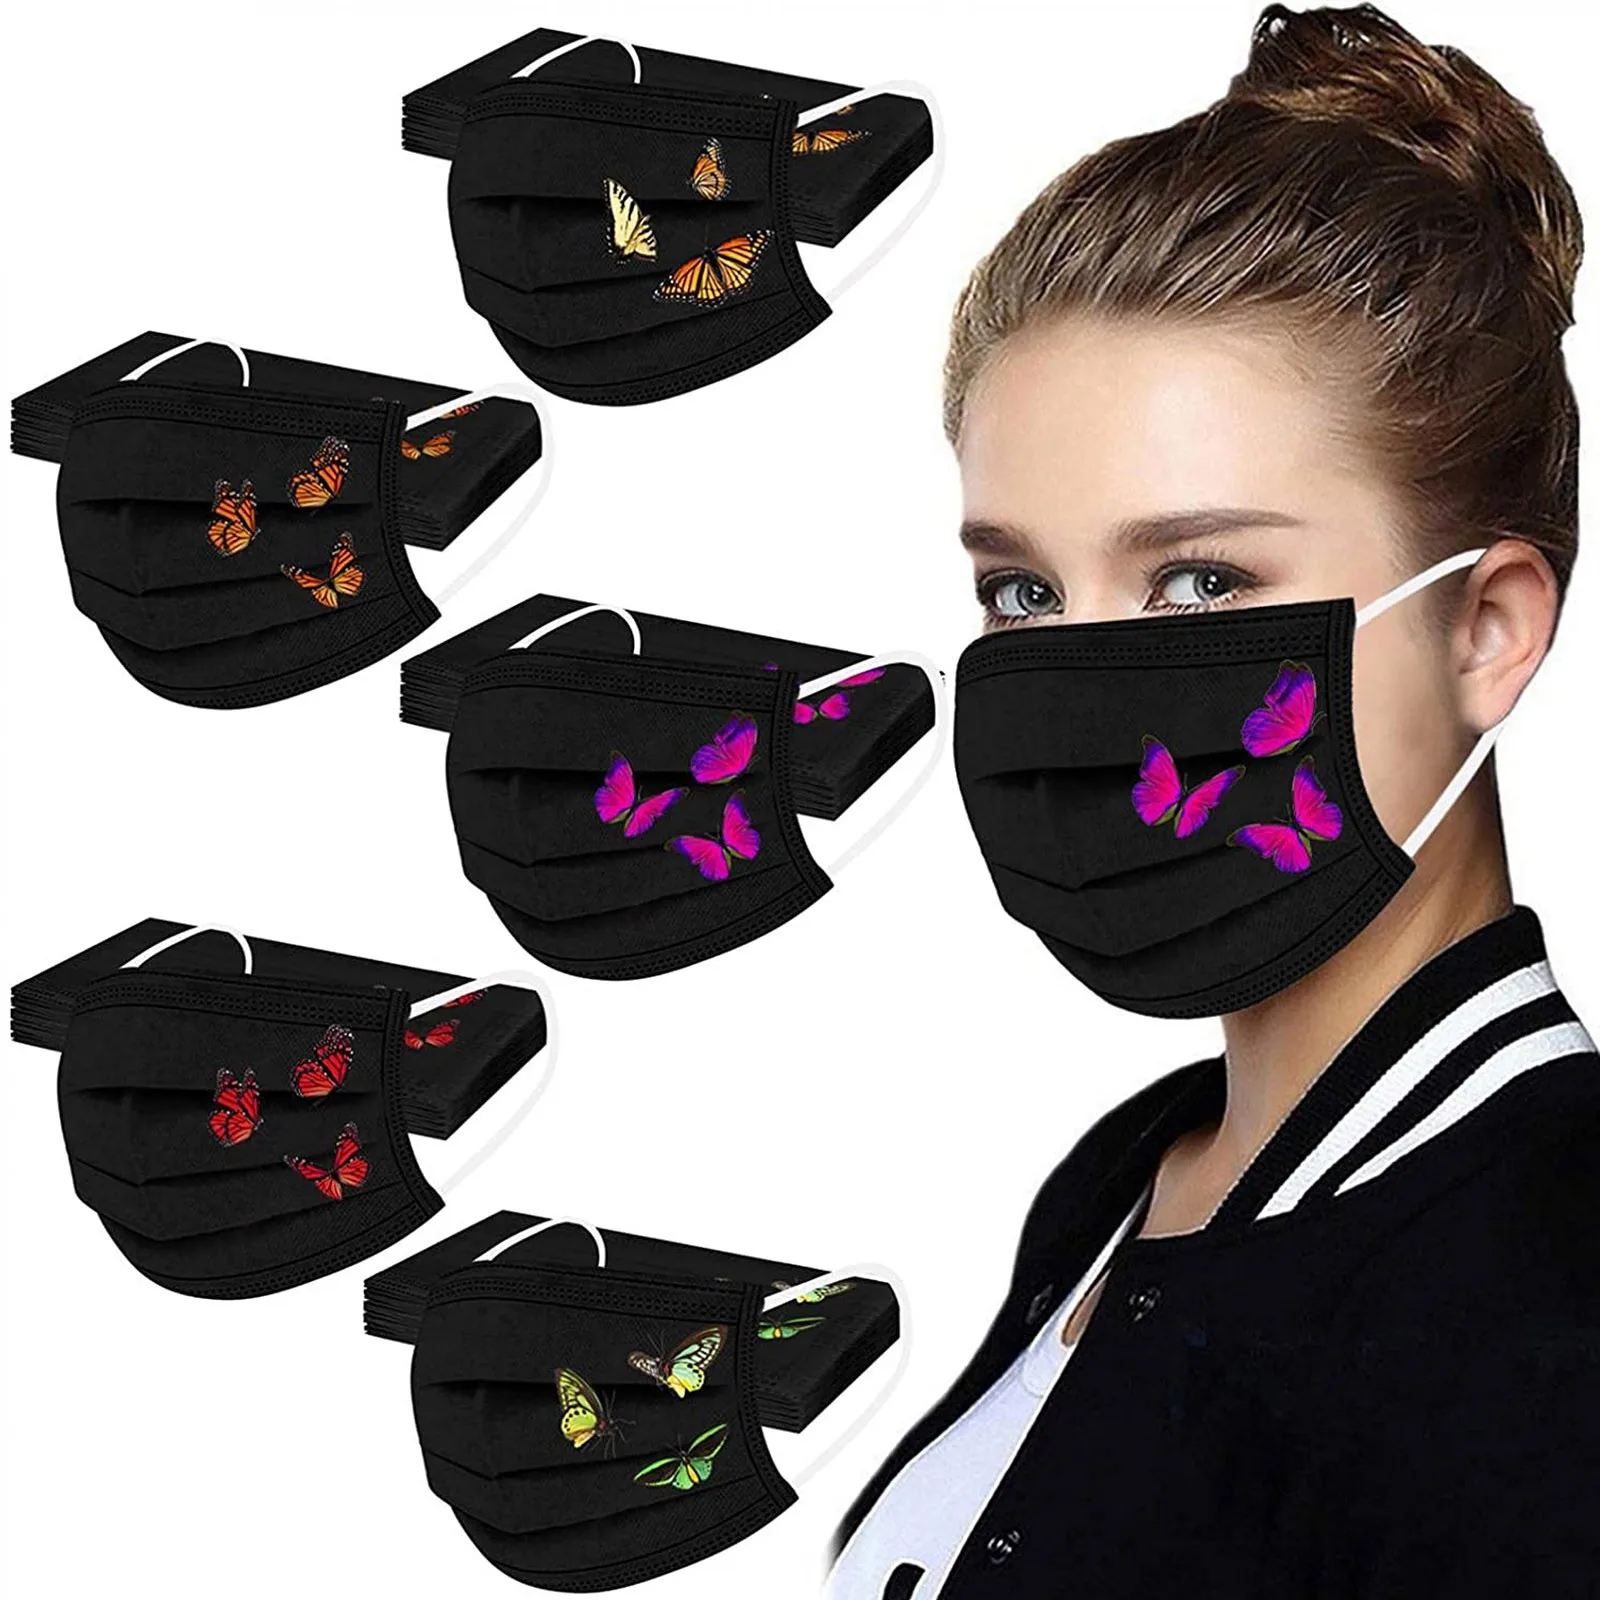 

Черная маска для лица, одноразовая 3-слойная маска с принтом бабочек для взрослых, для женщин, для Хэллоуина, косплея, Рождество, черная маска